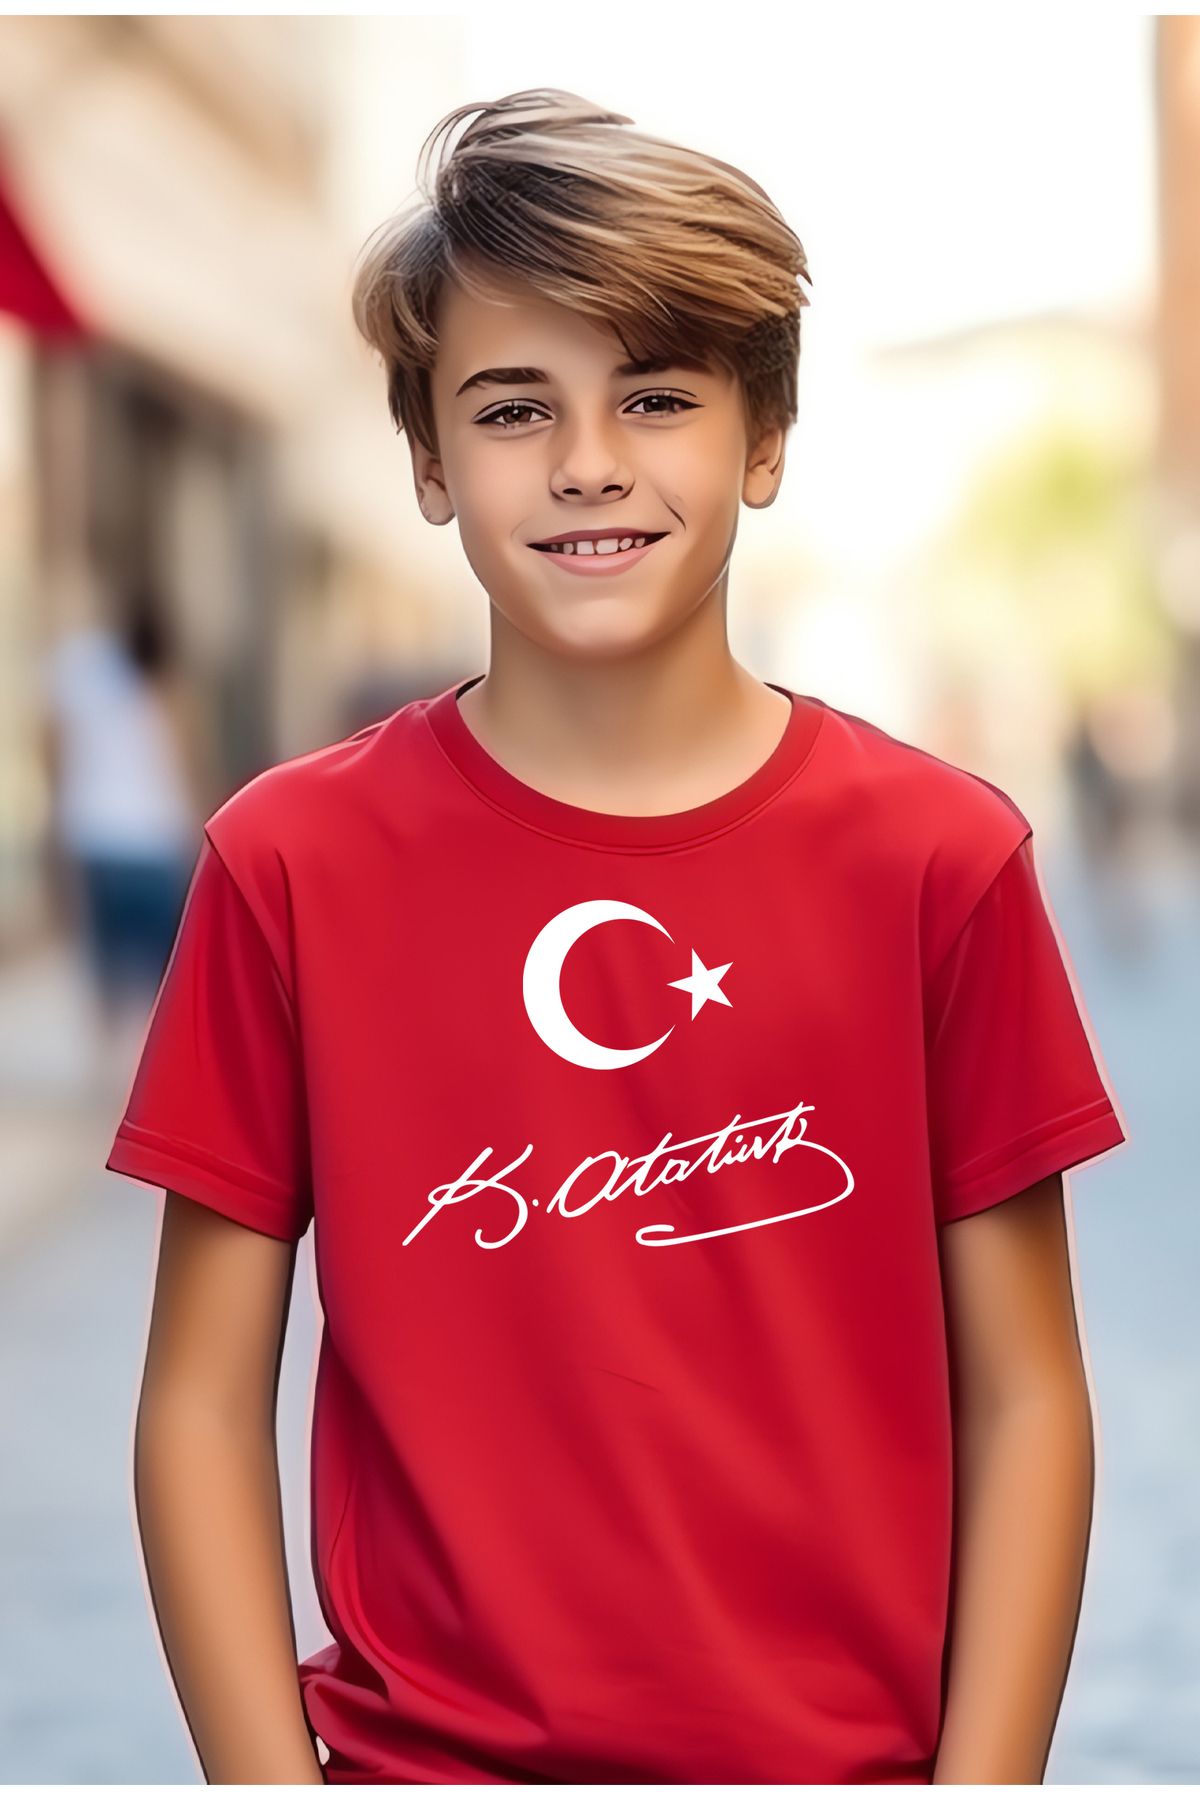 Breeze 23 Nisan Çocuk Tişört Türk Bayraklı Kırmızı-M.Kemal Atatürk imzalı